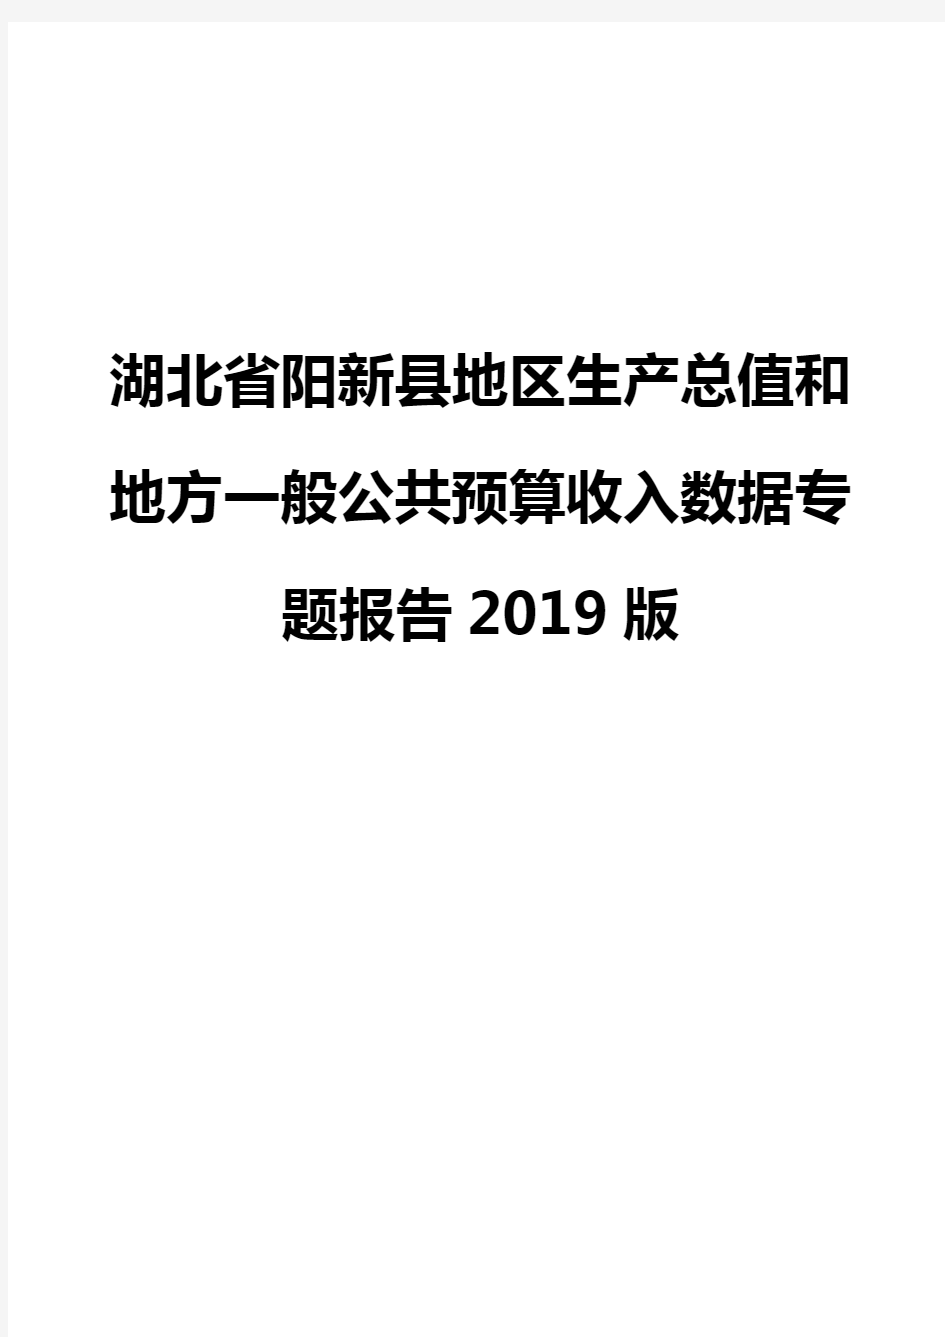 湖北省阳新县地区生产总值和地方一般公共预算收入数据专题报告2019版